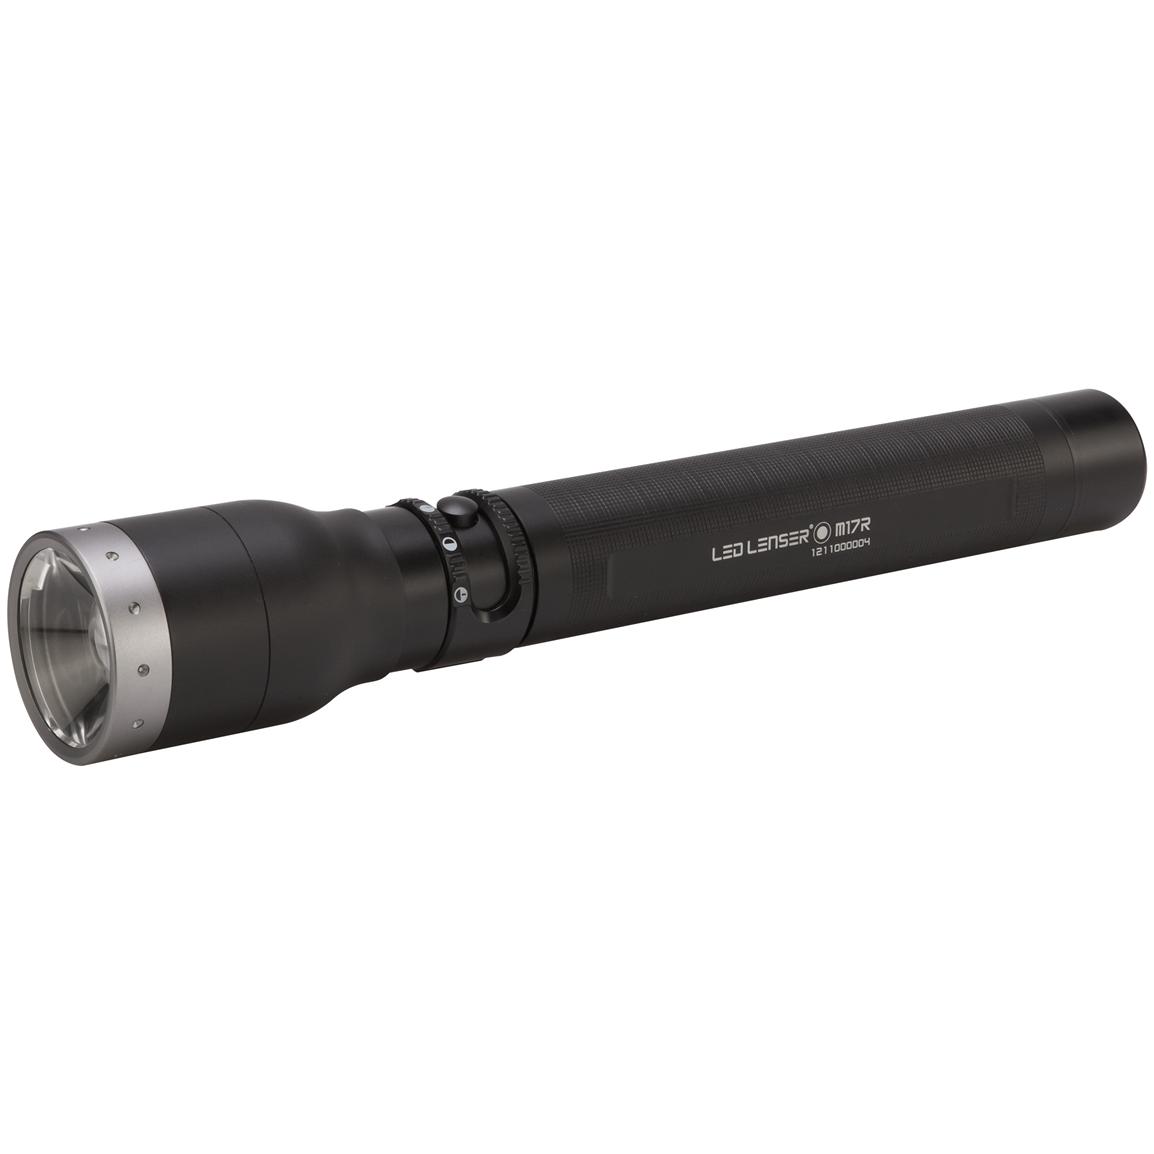 LED LENSER® M17R 850-lumen Rechargeable Flashlight - 607813 ...